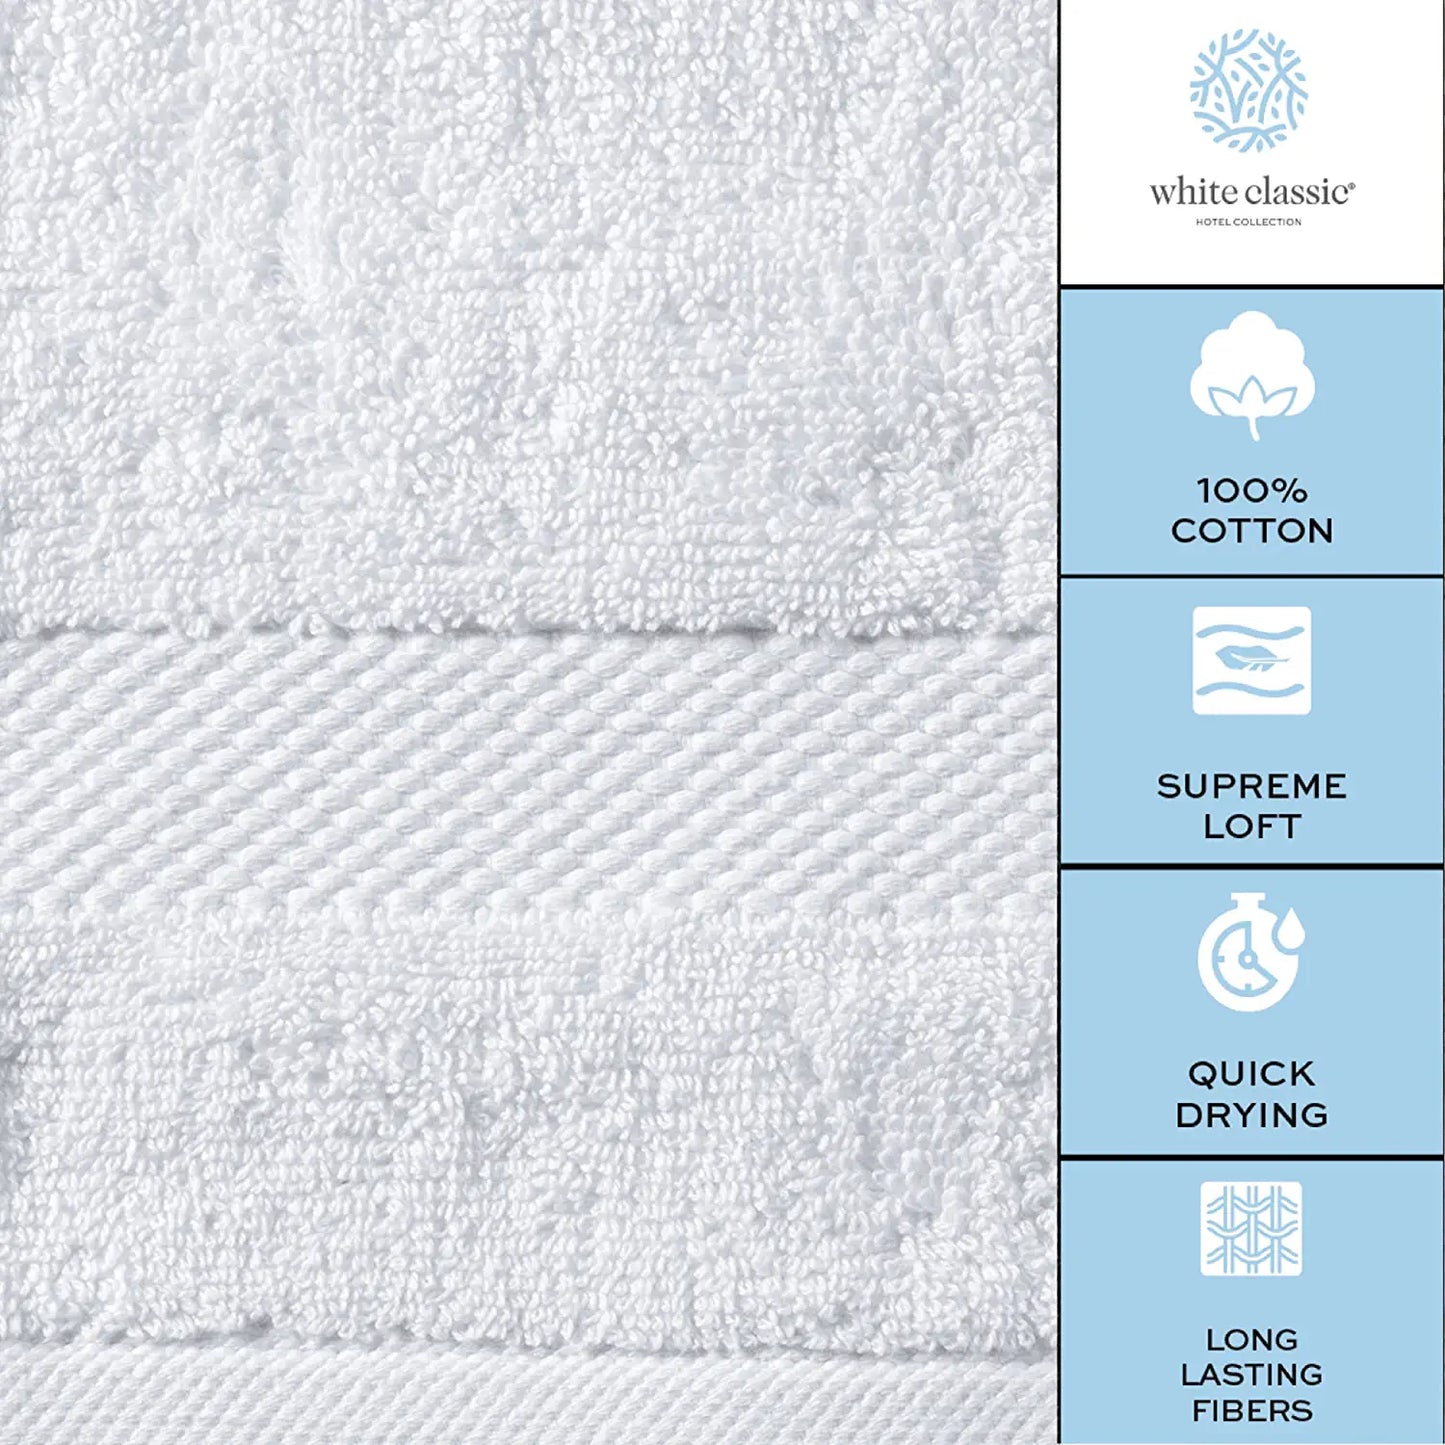 100% cotton white bath sheets